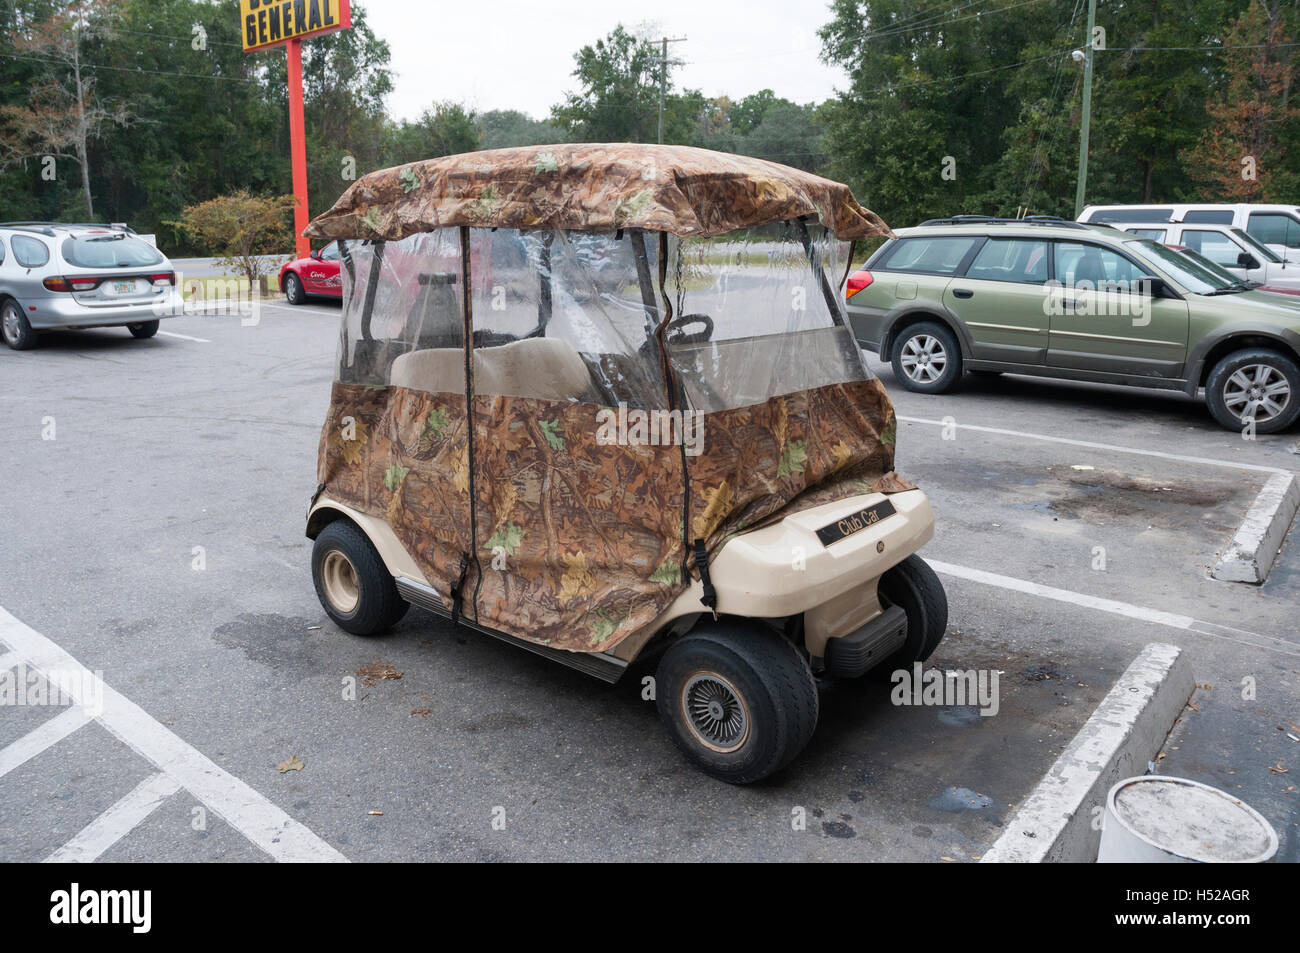 Club de golf ci-joint Camouflage voiture garée à un dollar local magasin général. Banque D'Images